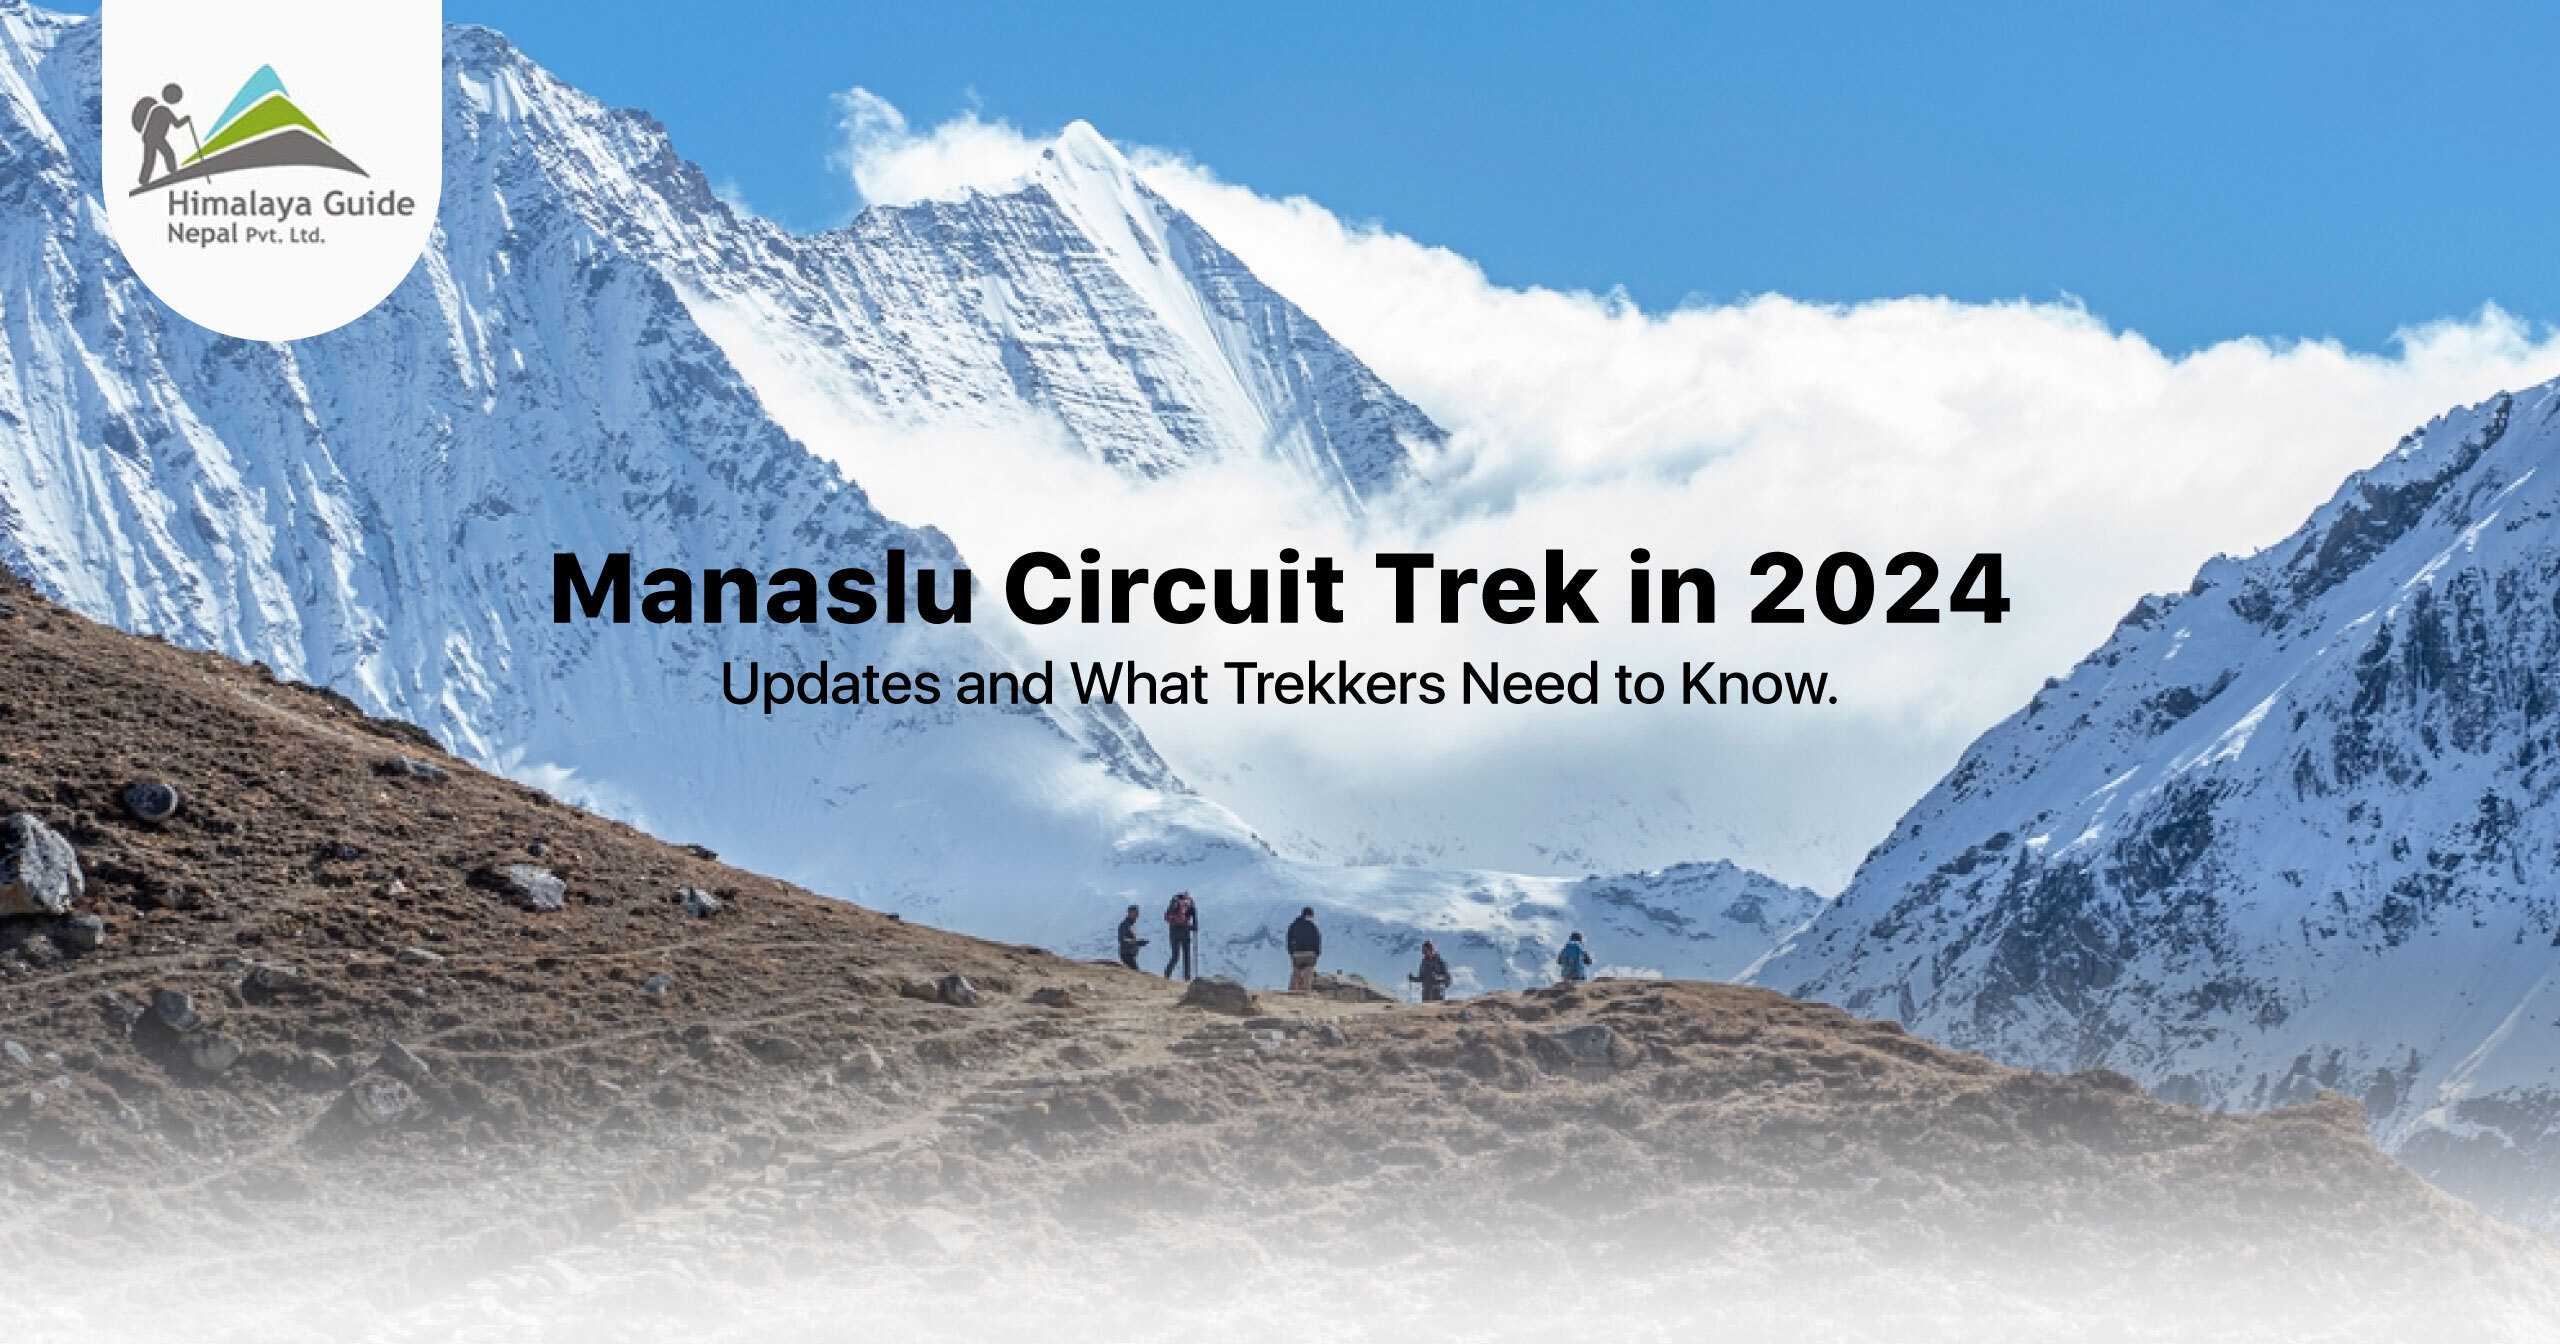 Manaslu Circuit Trek in 2024: Updates and What Trekkers Need to Know